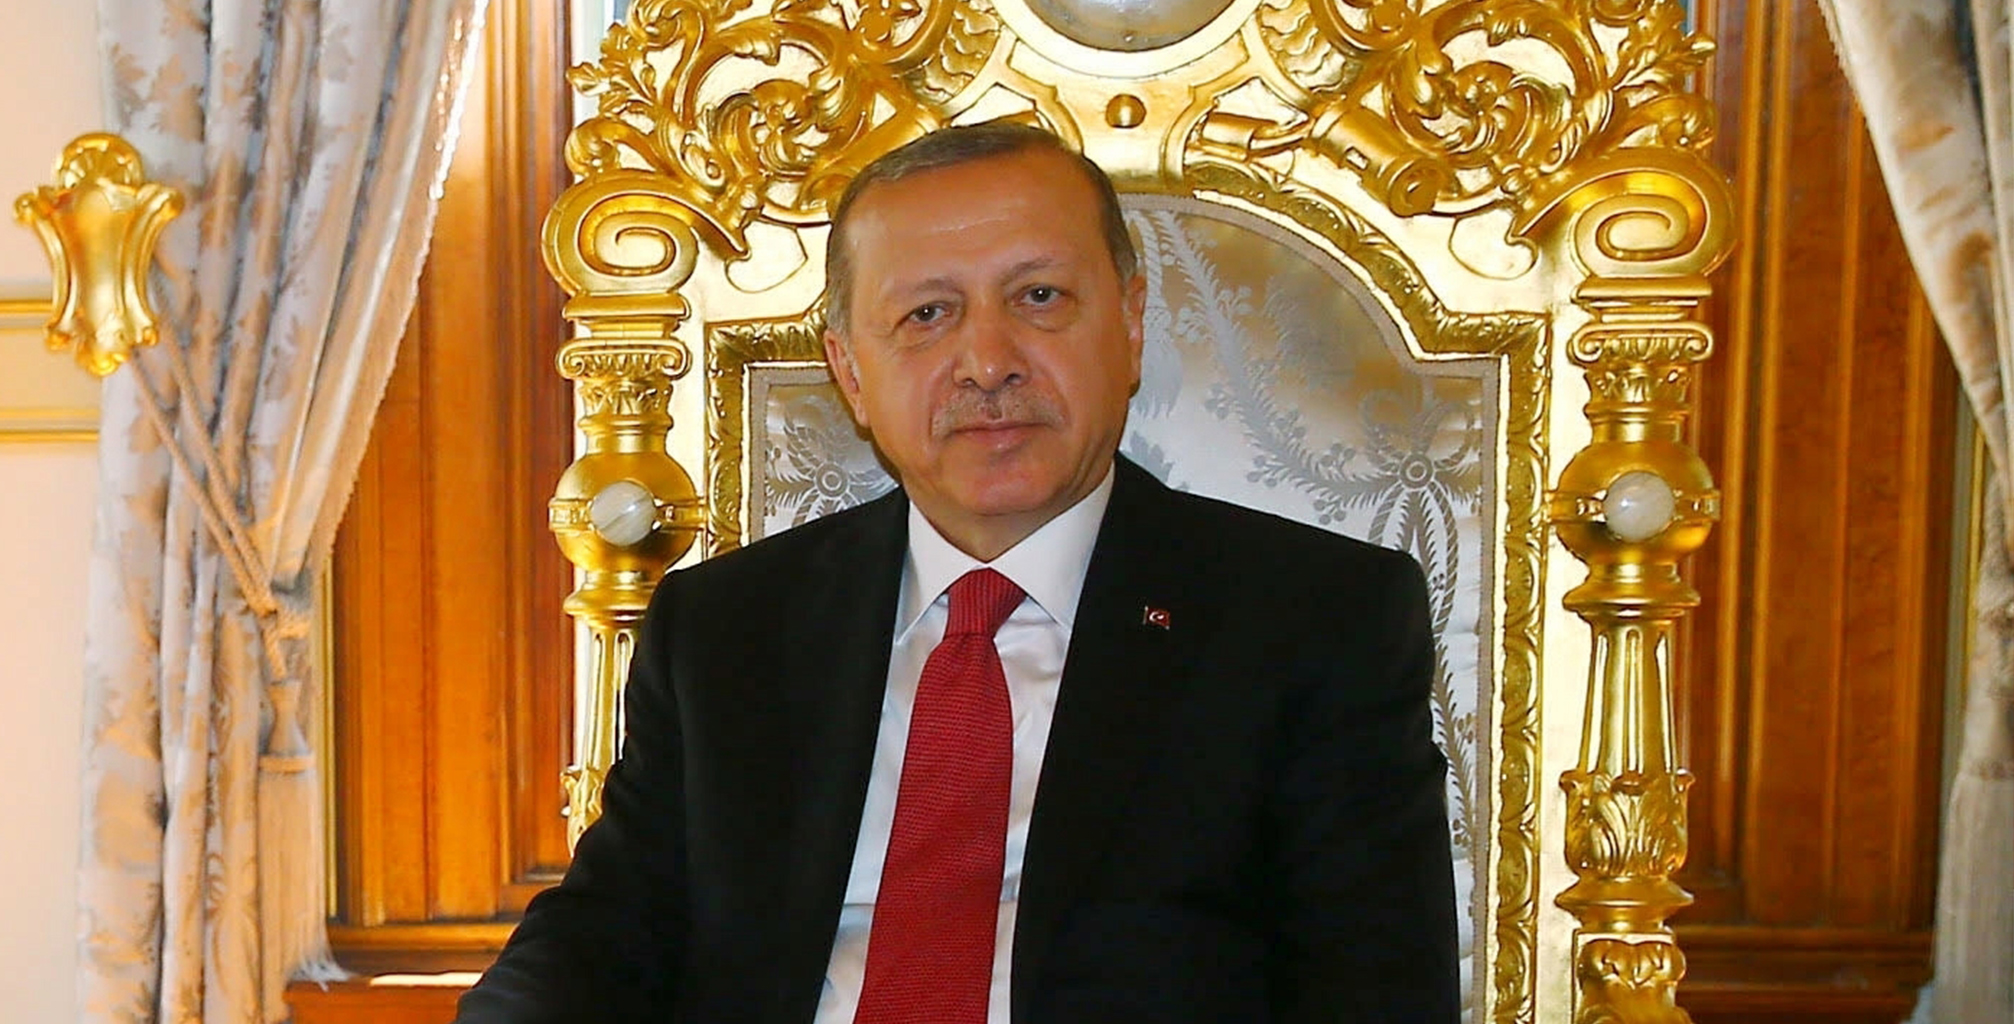 KOMÜNİSTLER DİYOR Kİ | Acıyı bal eyleyin diyen Erdoğan’a yanıtımızdır: Biri yer biri bakar kıyamet ondan kopar!